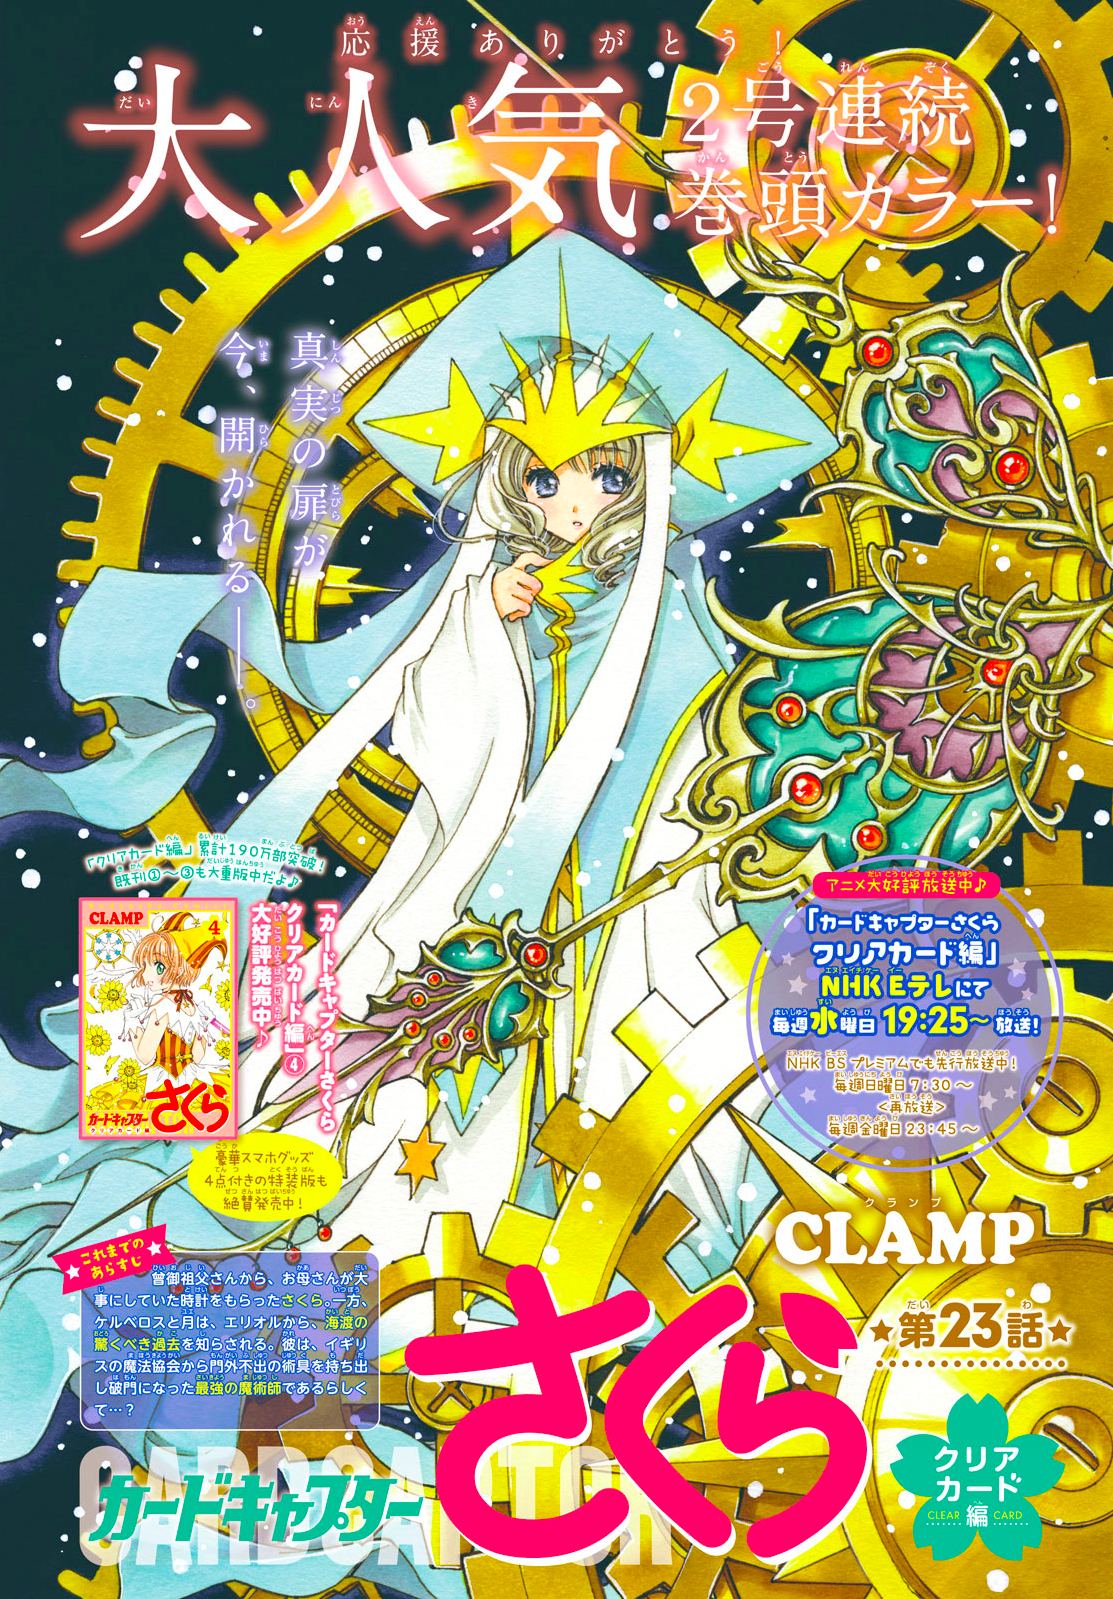 NAISU confirma lançamento do anime clássico de Cardcaptor Sakura